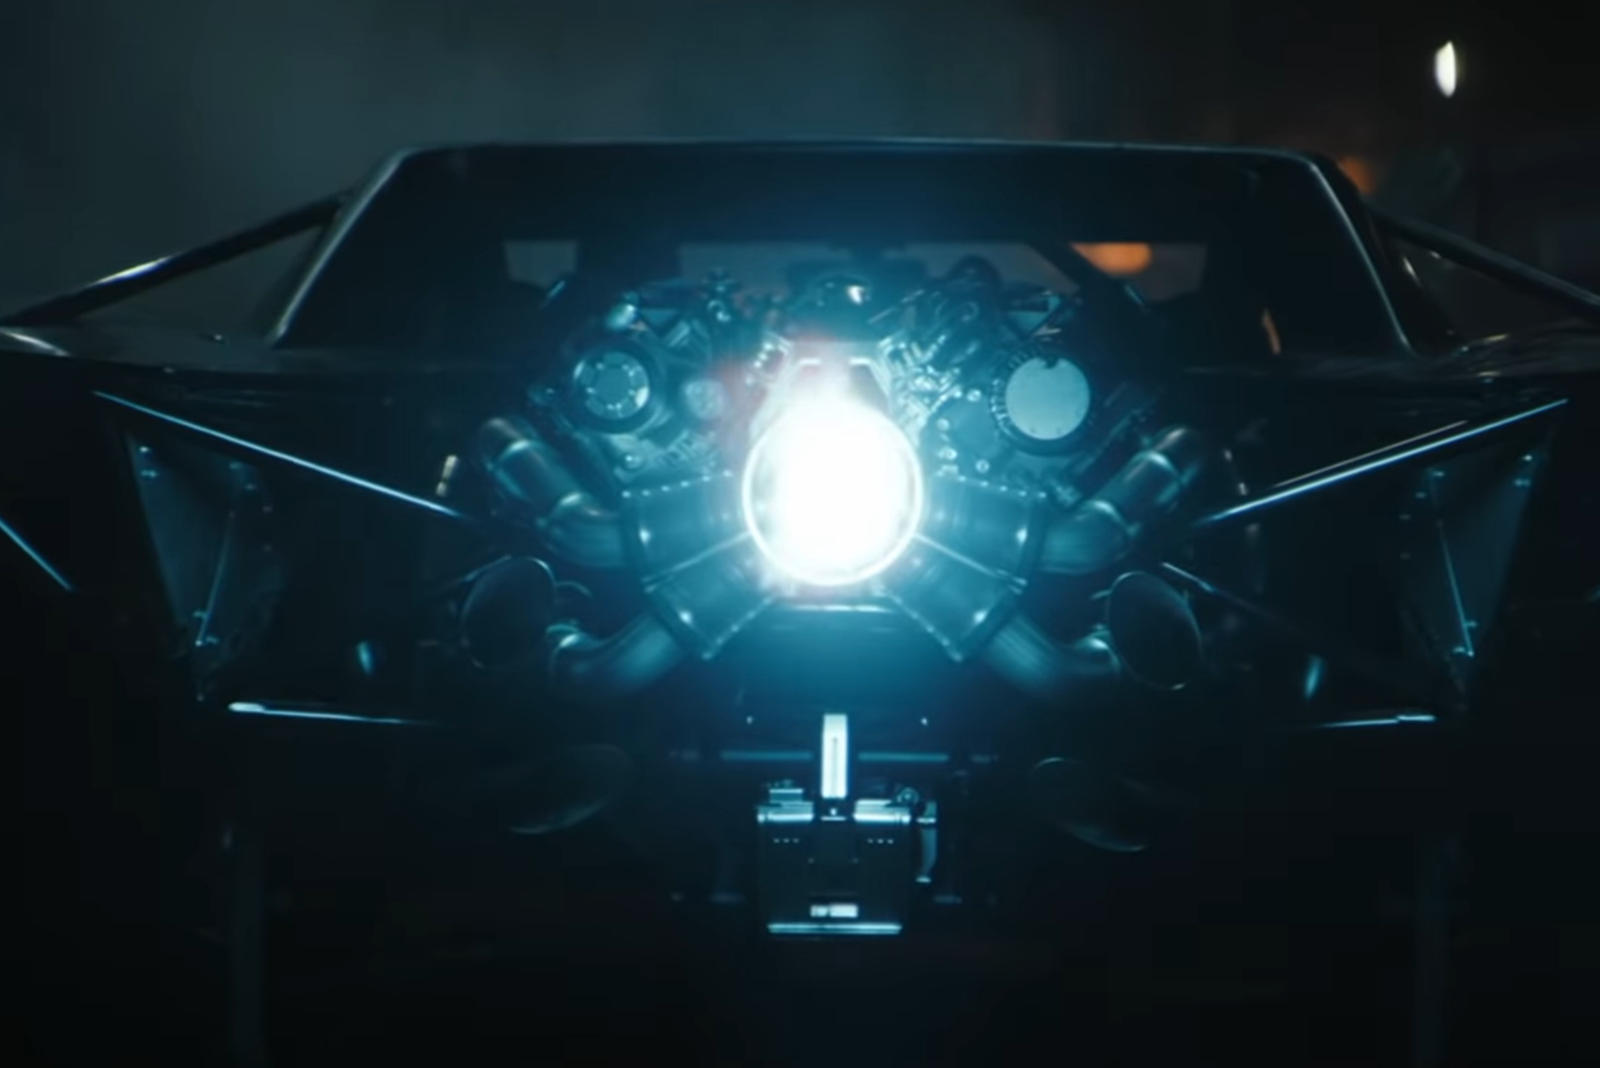 سيارة باتموبيل الجديدة تظهر في إعلان فيلم باتمان القادم 6